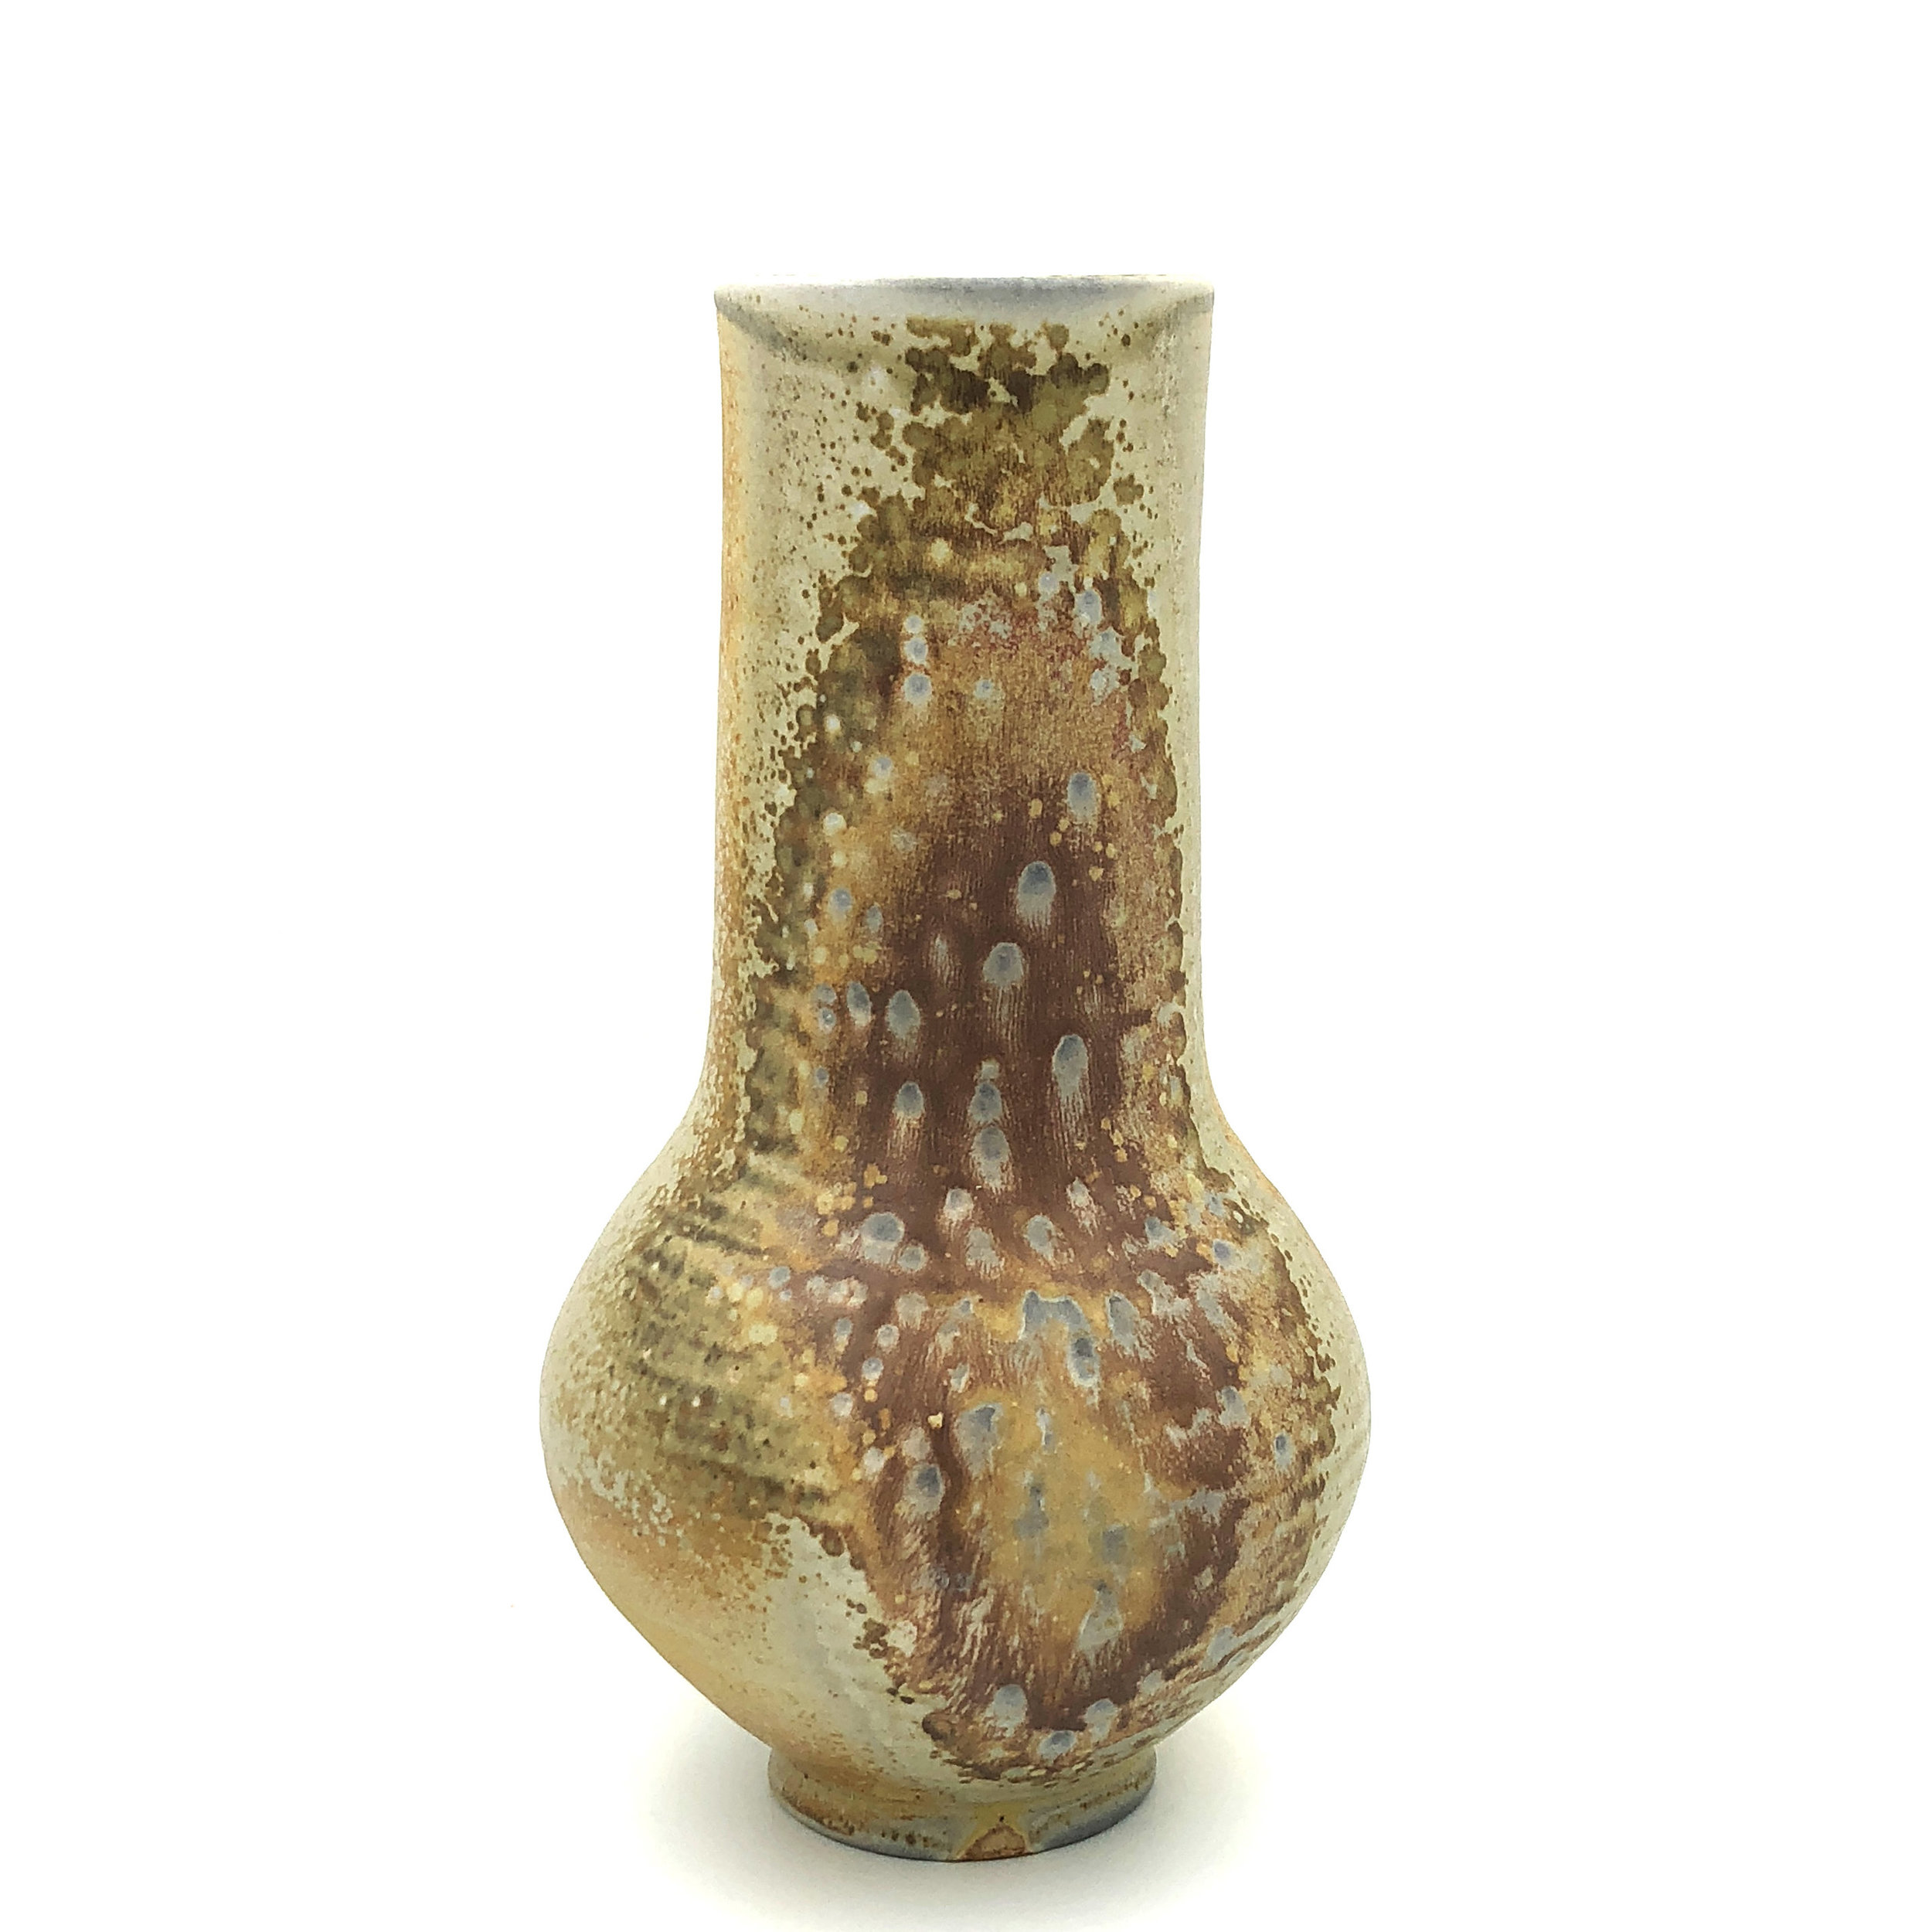   Vase , soda fired stoneware, 2018 